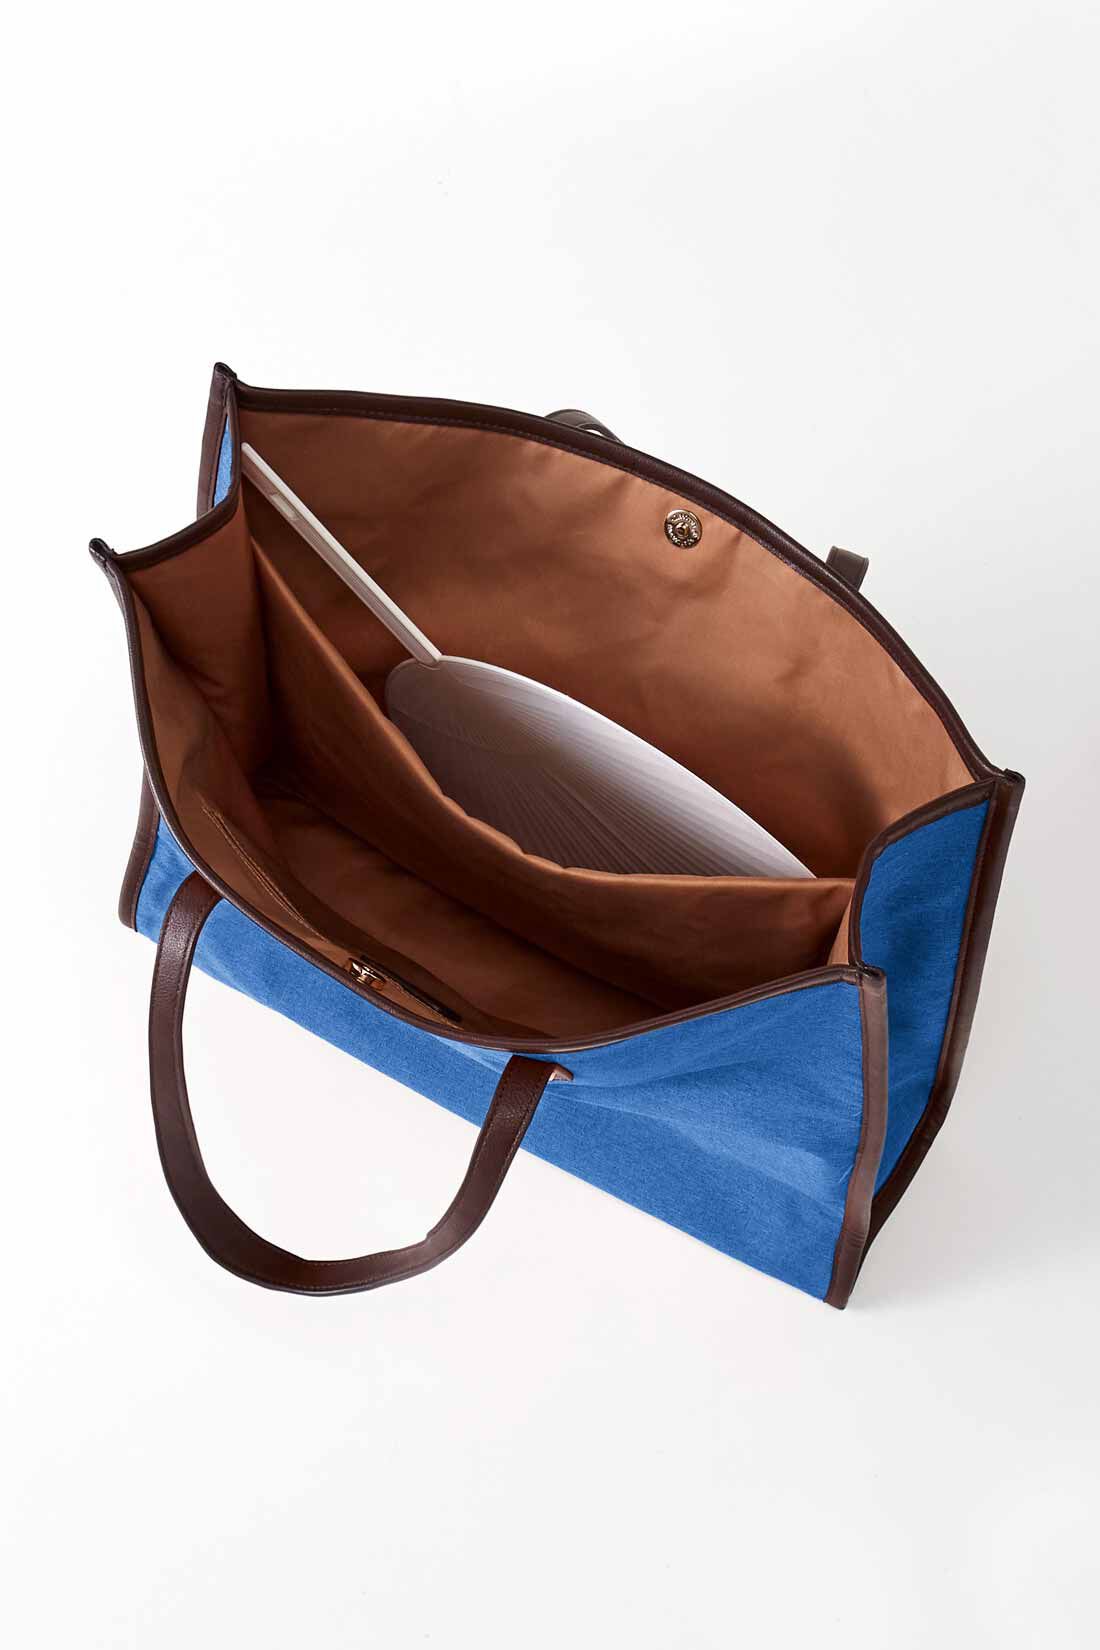 OSYAIRO|OSYAIRO ジャンボうちわが入るパイピングトートバッグ〈ブルー〉|ジャンボうちわがすっぽり入る、クッション材の入った大きな内ポケット付き。